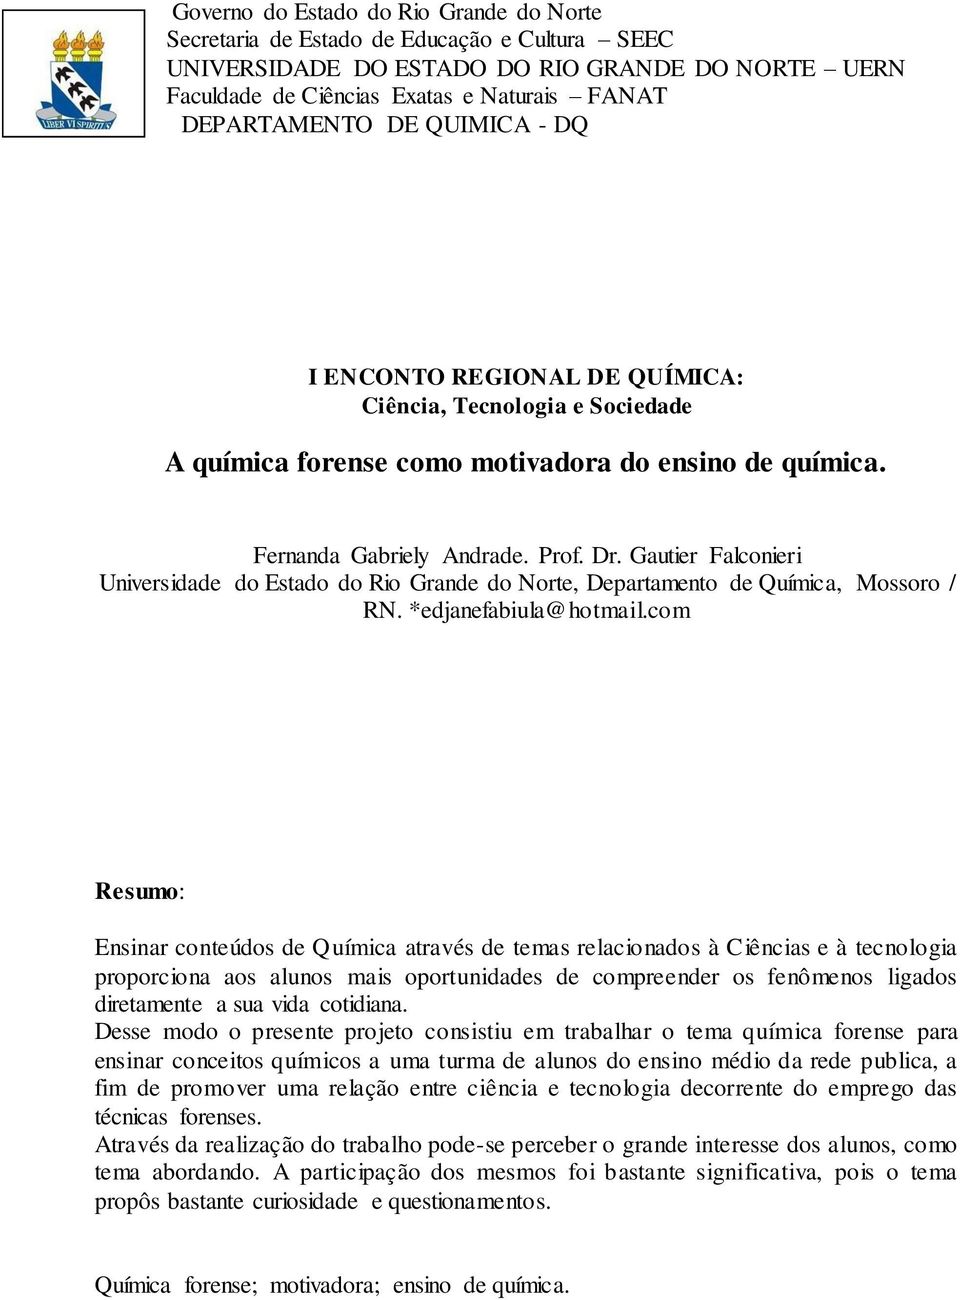 Gautier Falconieri Universidade do Estado do Rio Grande do Norte, Departamento de Química, Mossoro / RN. *edjanefabiula@hotmail.